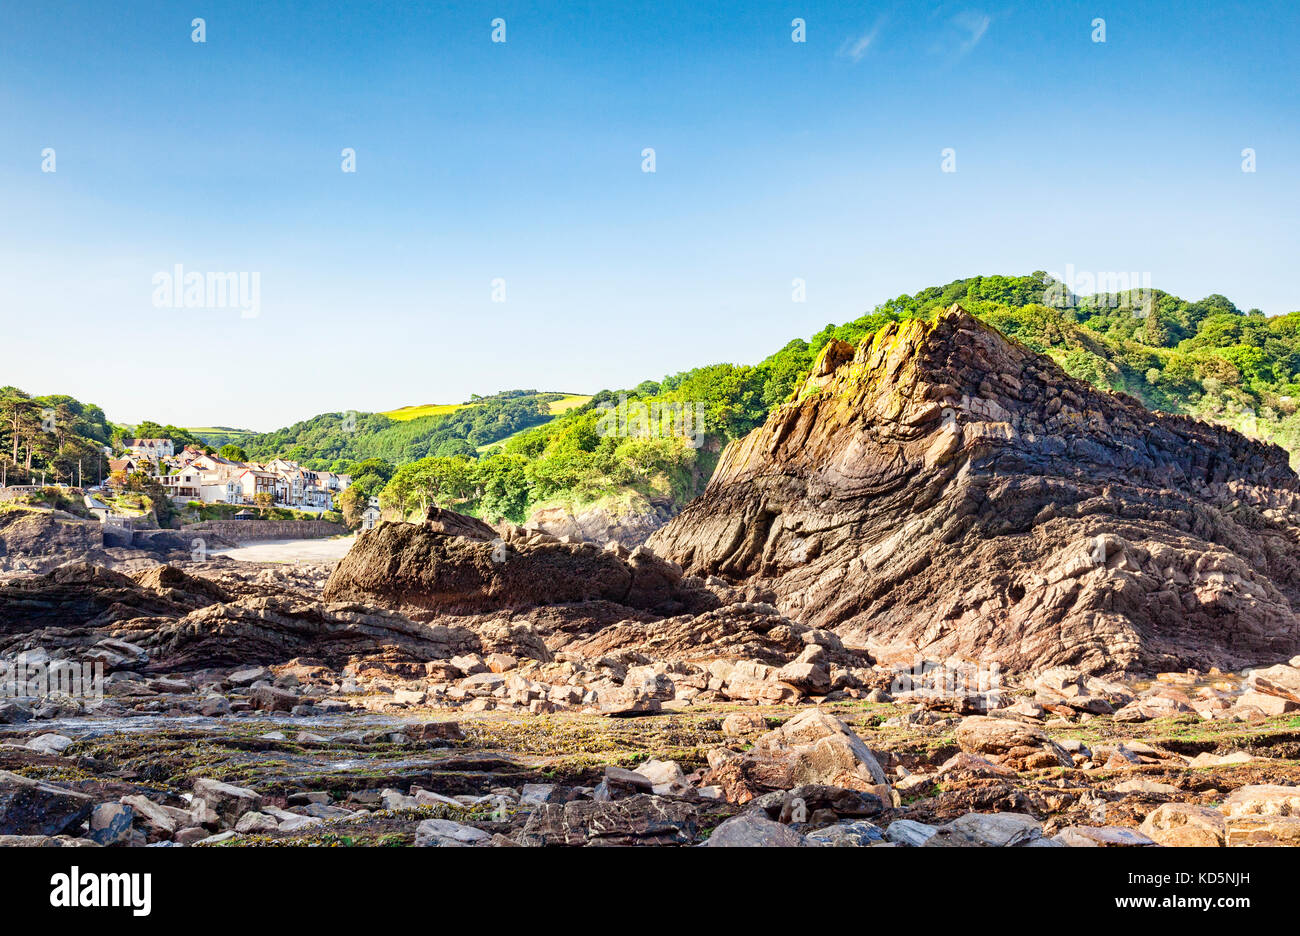 La spiaggia rocciosa a combe martin, North Devon, Inghilterra, Regno Unito, con il villaggio in background. Foto Stock